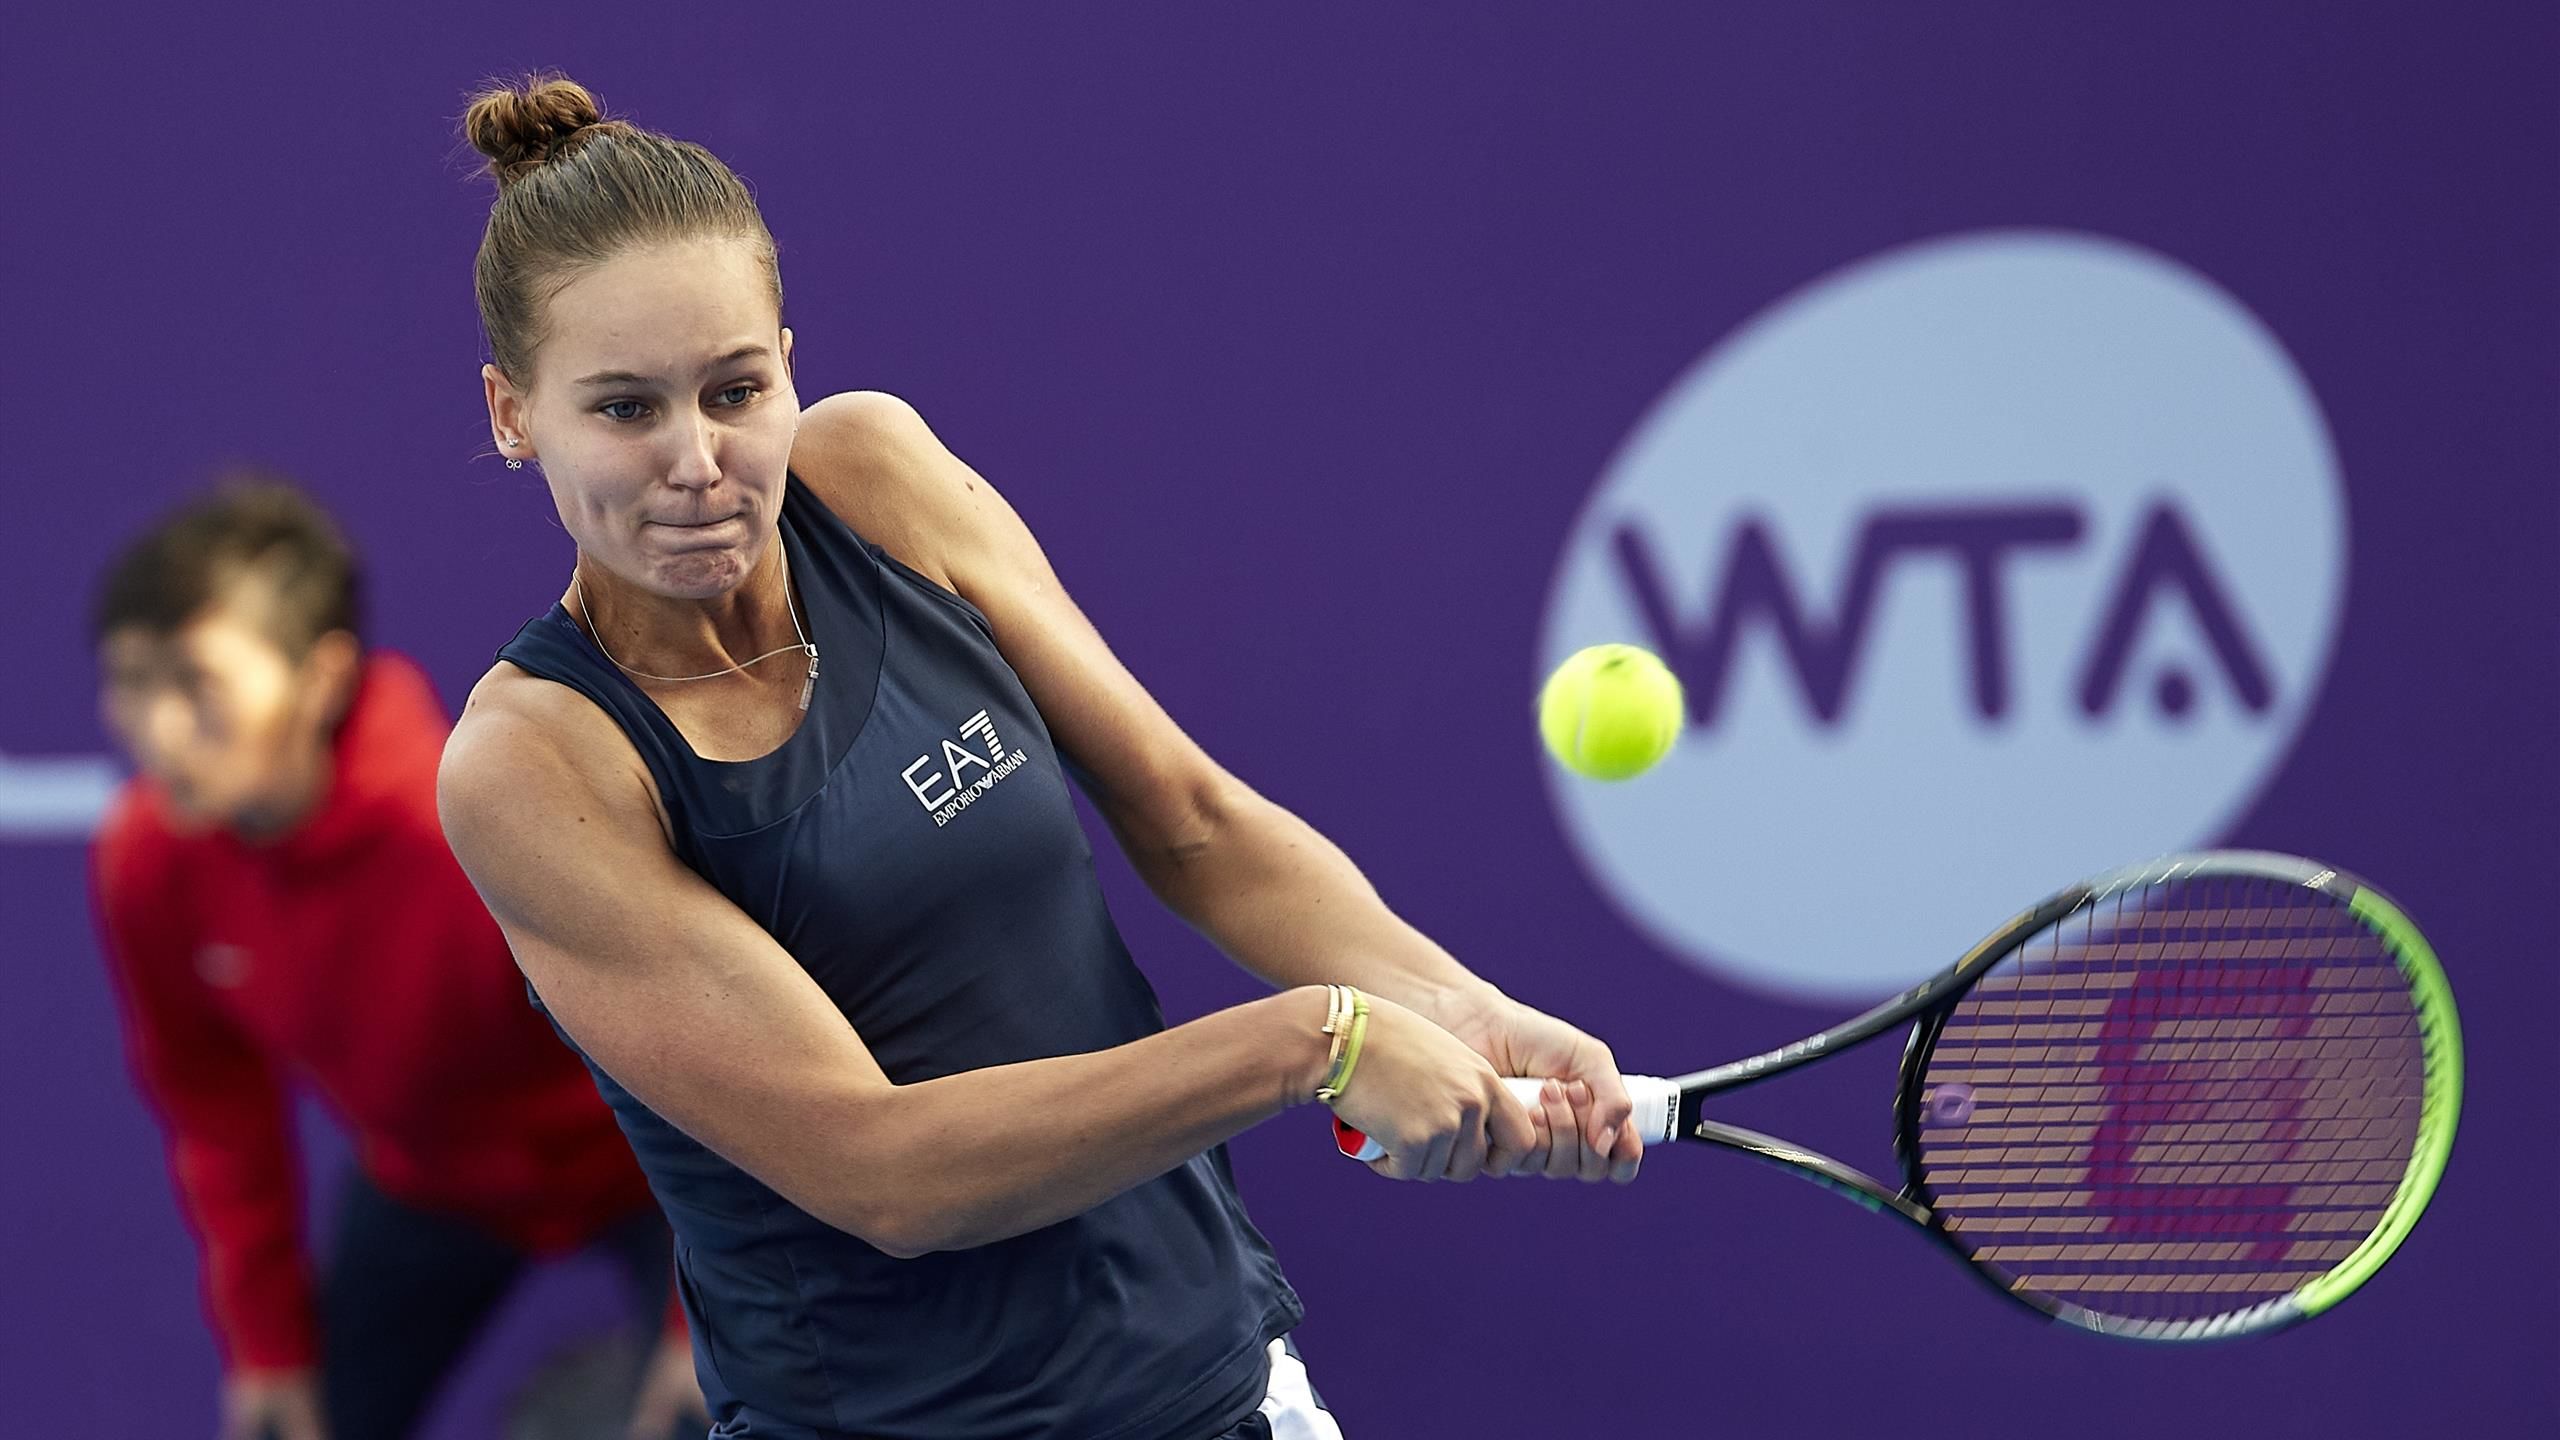 Кудерметова проиграла Квитовой на турнире WTA в Мадриде